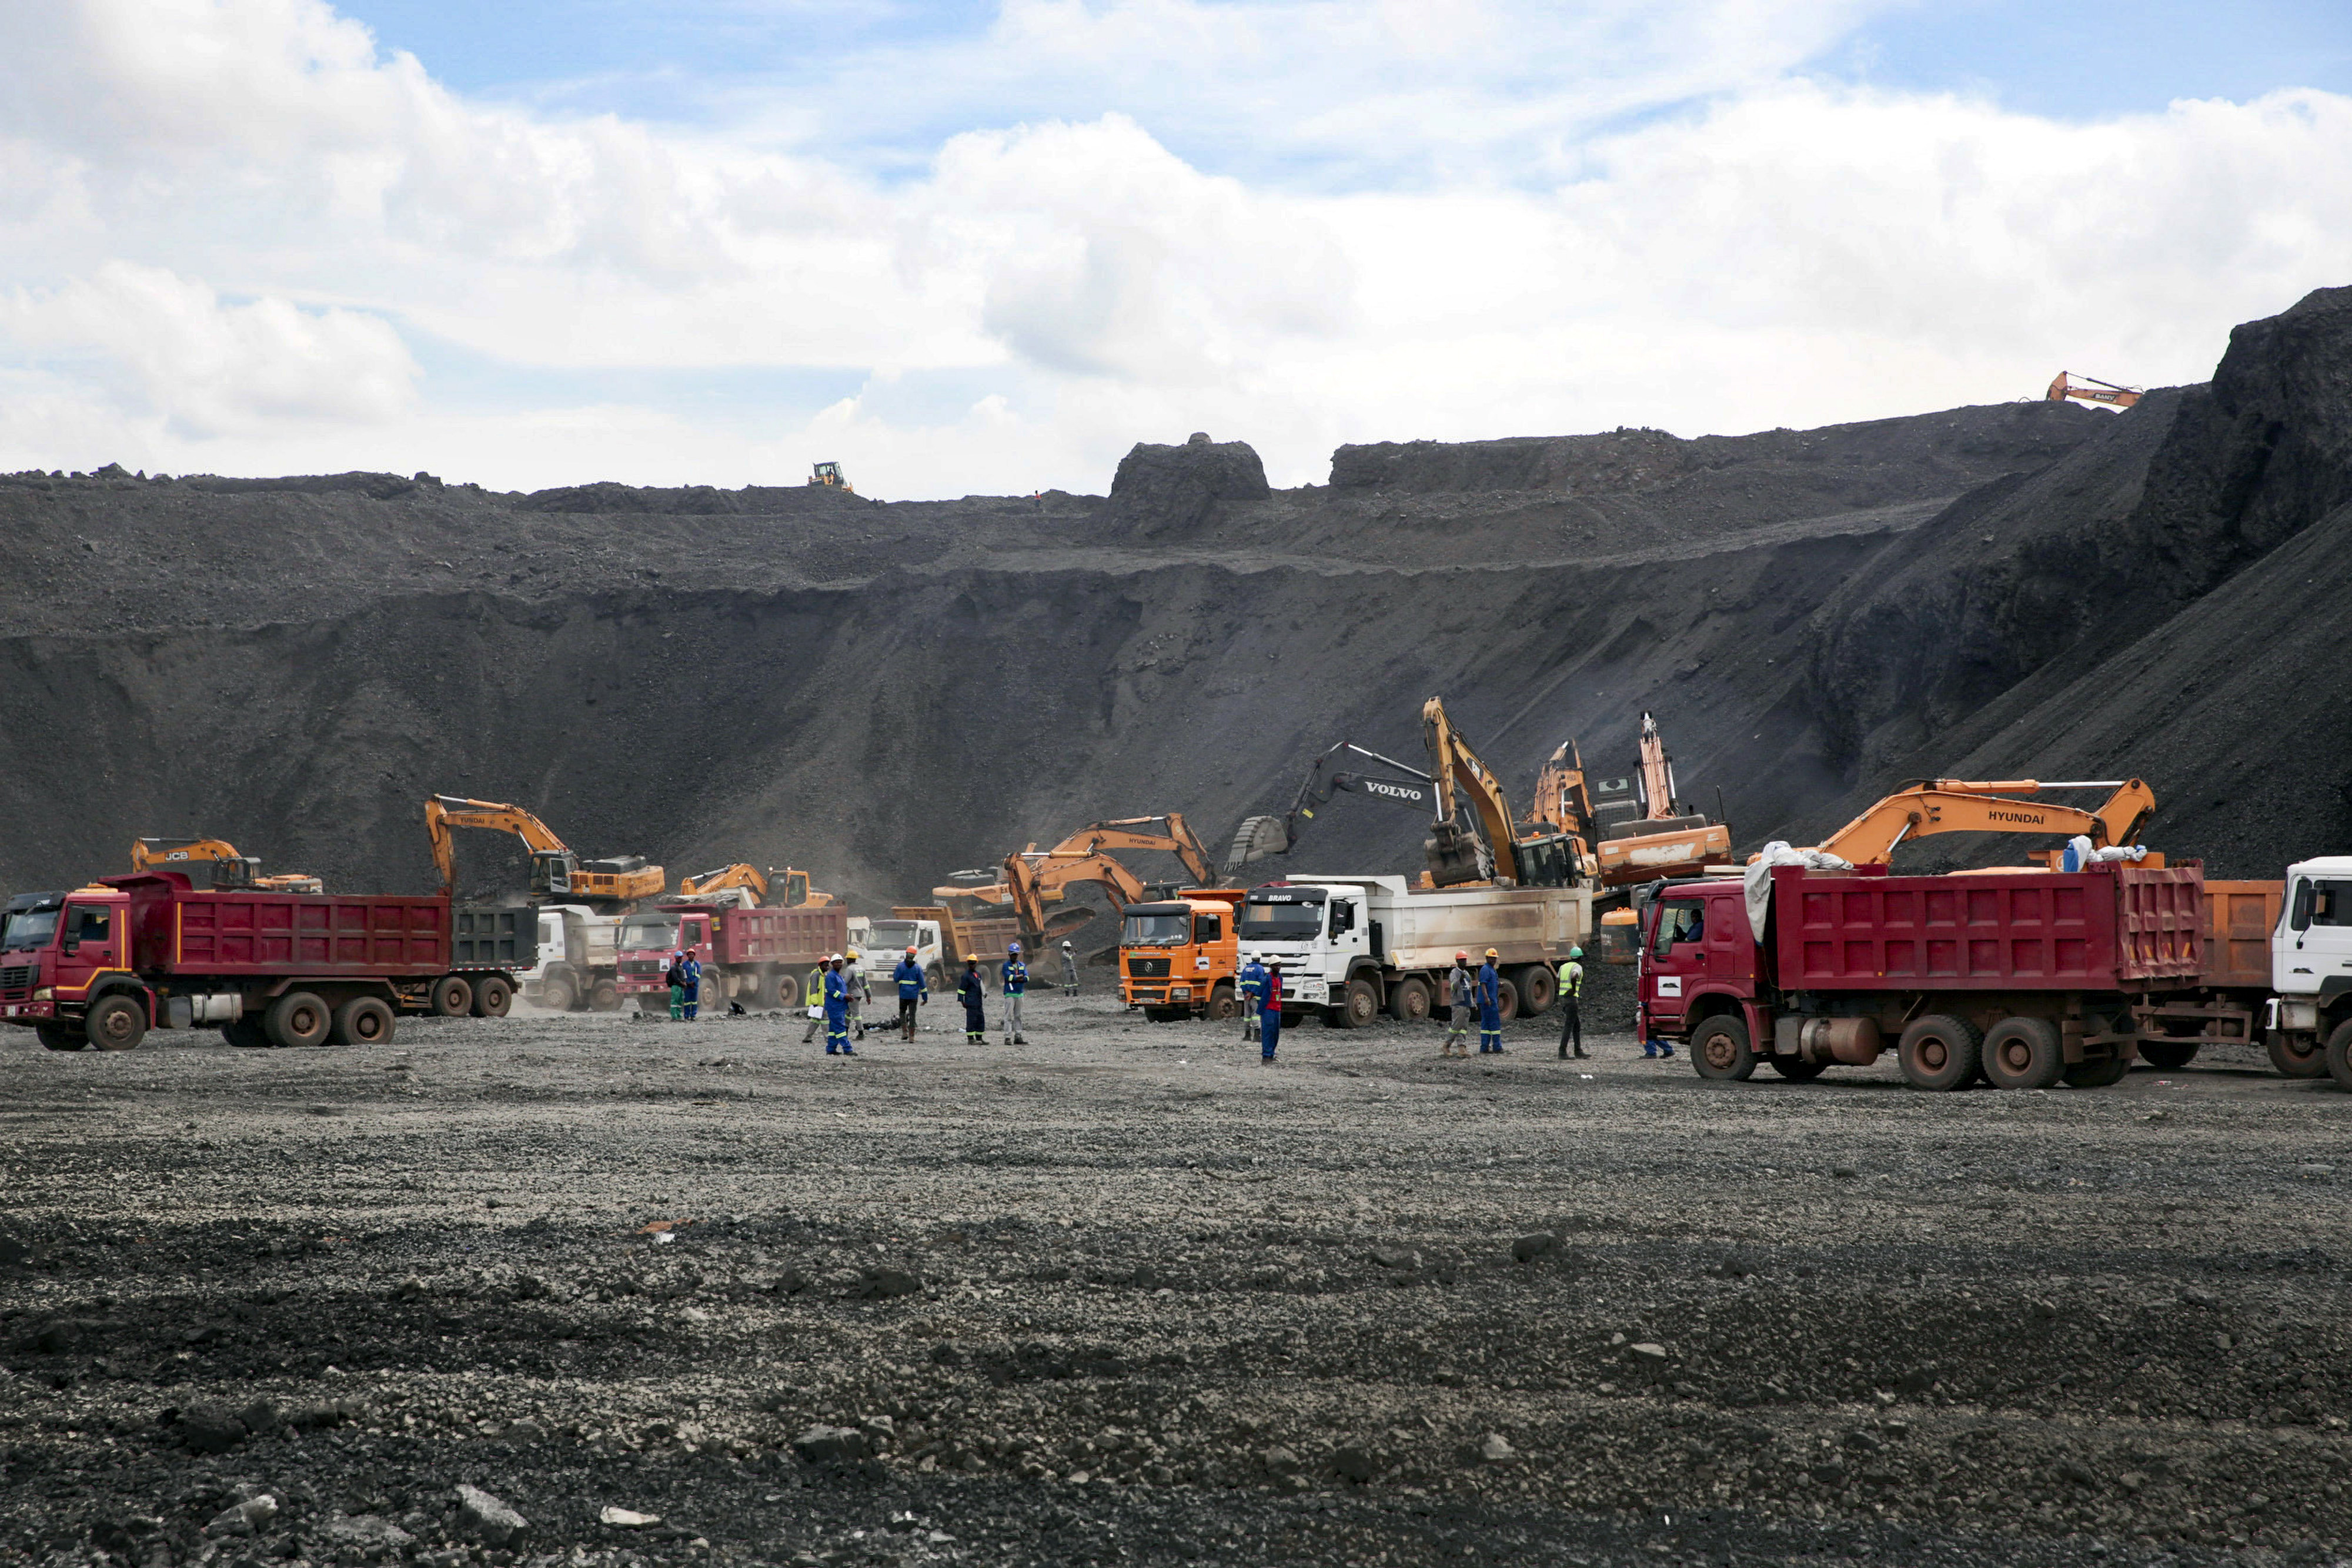 Slag pile of the Mopani Glencore copper mine in Zambia in January 2019